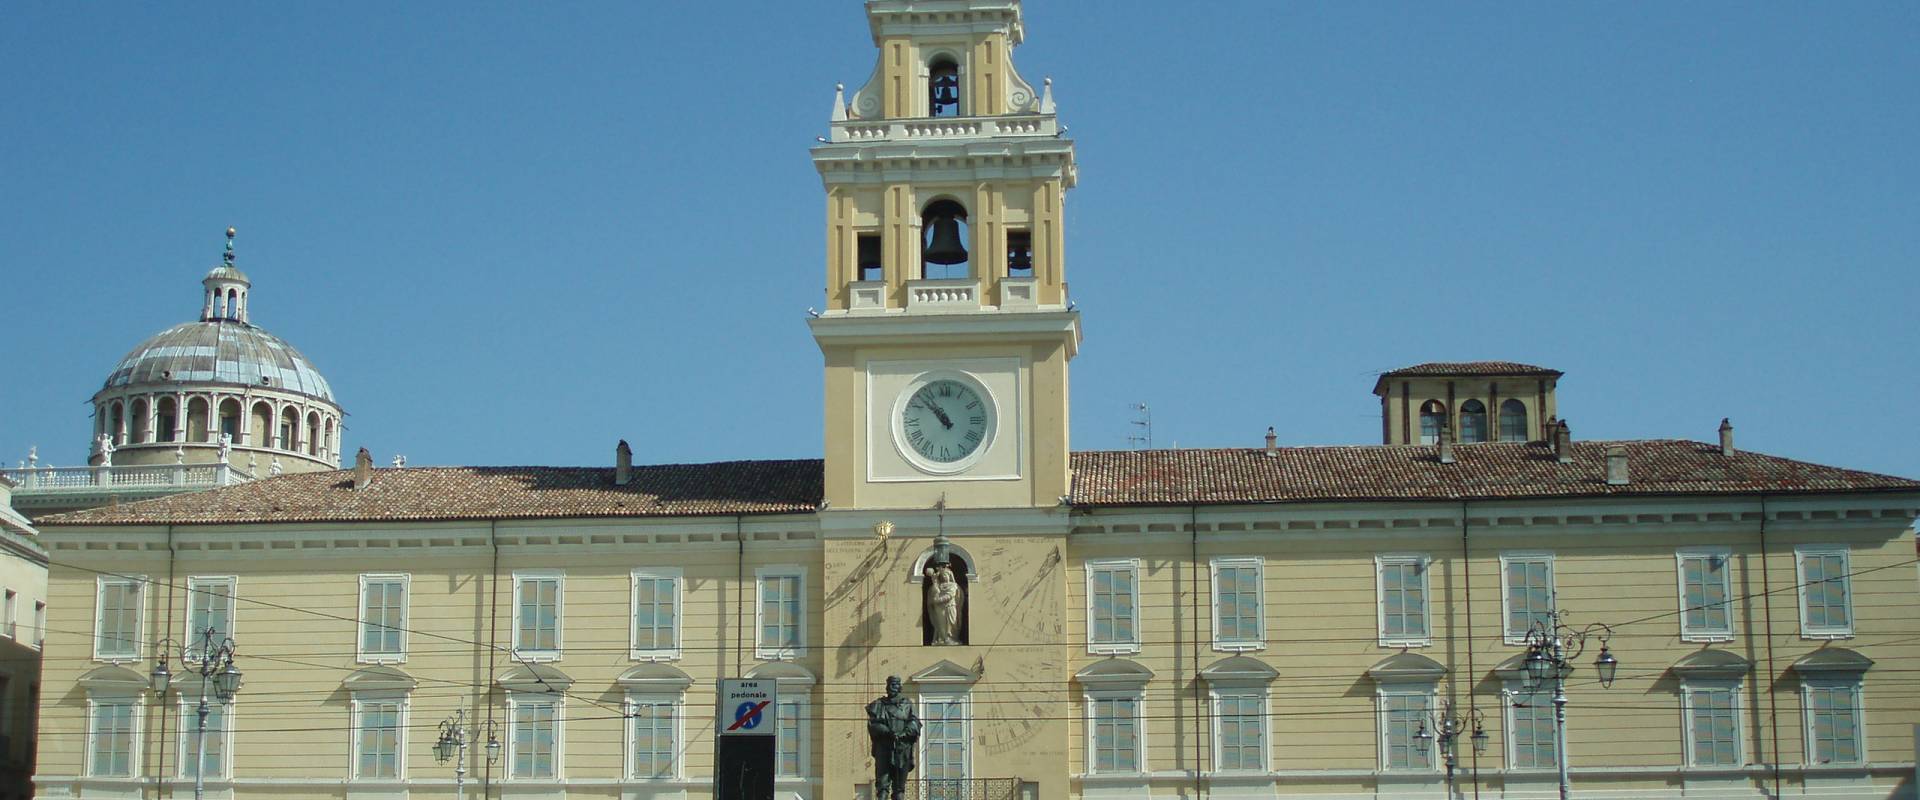 Palazzo del Governatore, Parma photo by Marcogiulio